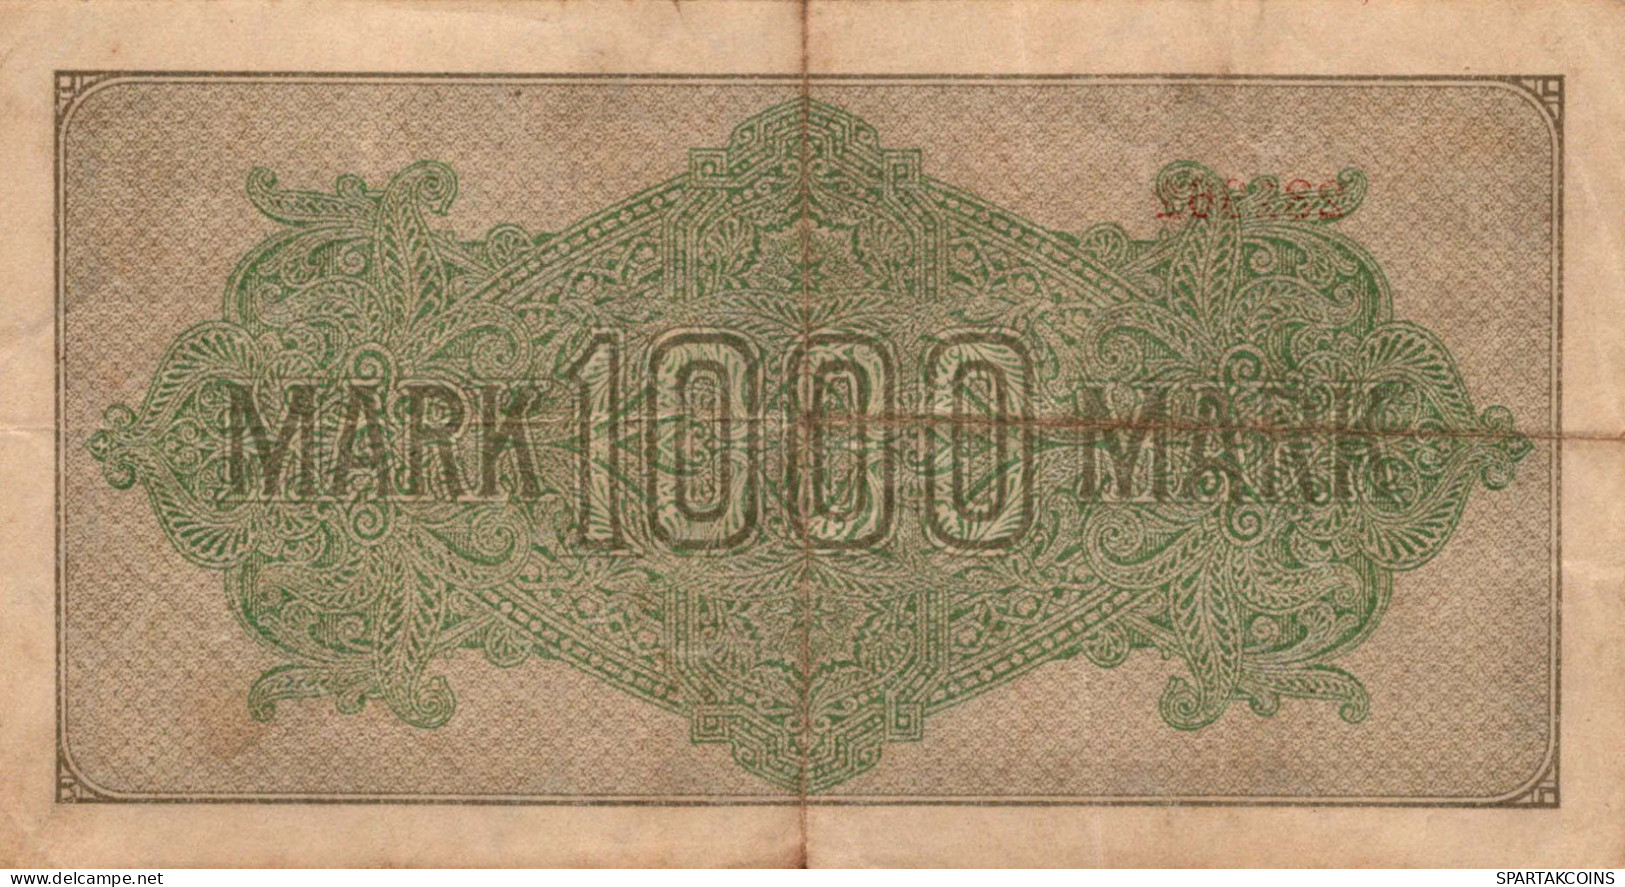 1000 MARK 1922 Stadt BERLIN DEUTSCHLAND Papiergeld Banknote #PL449 - [11] Local Banknote Issues